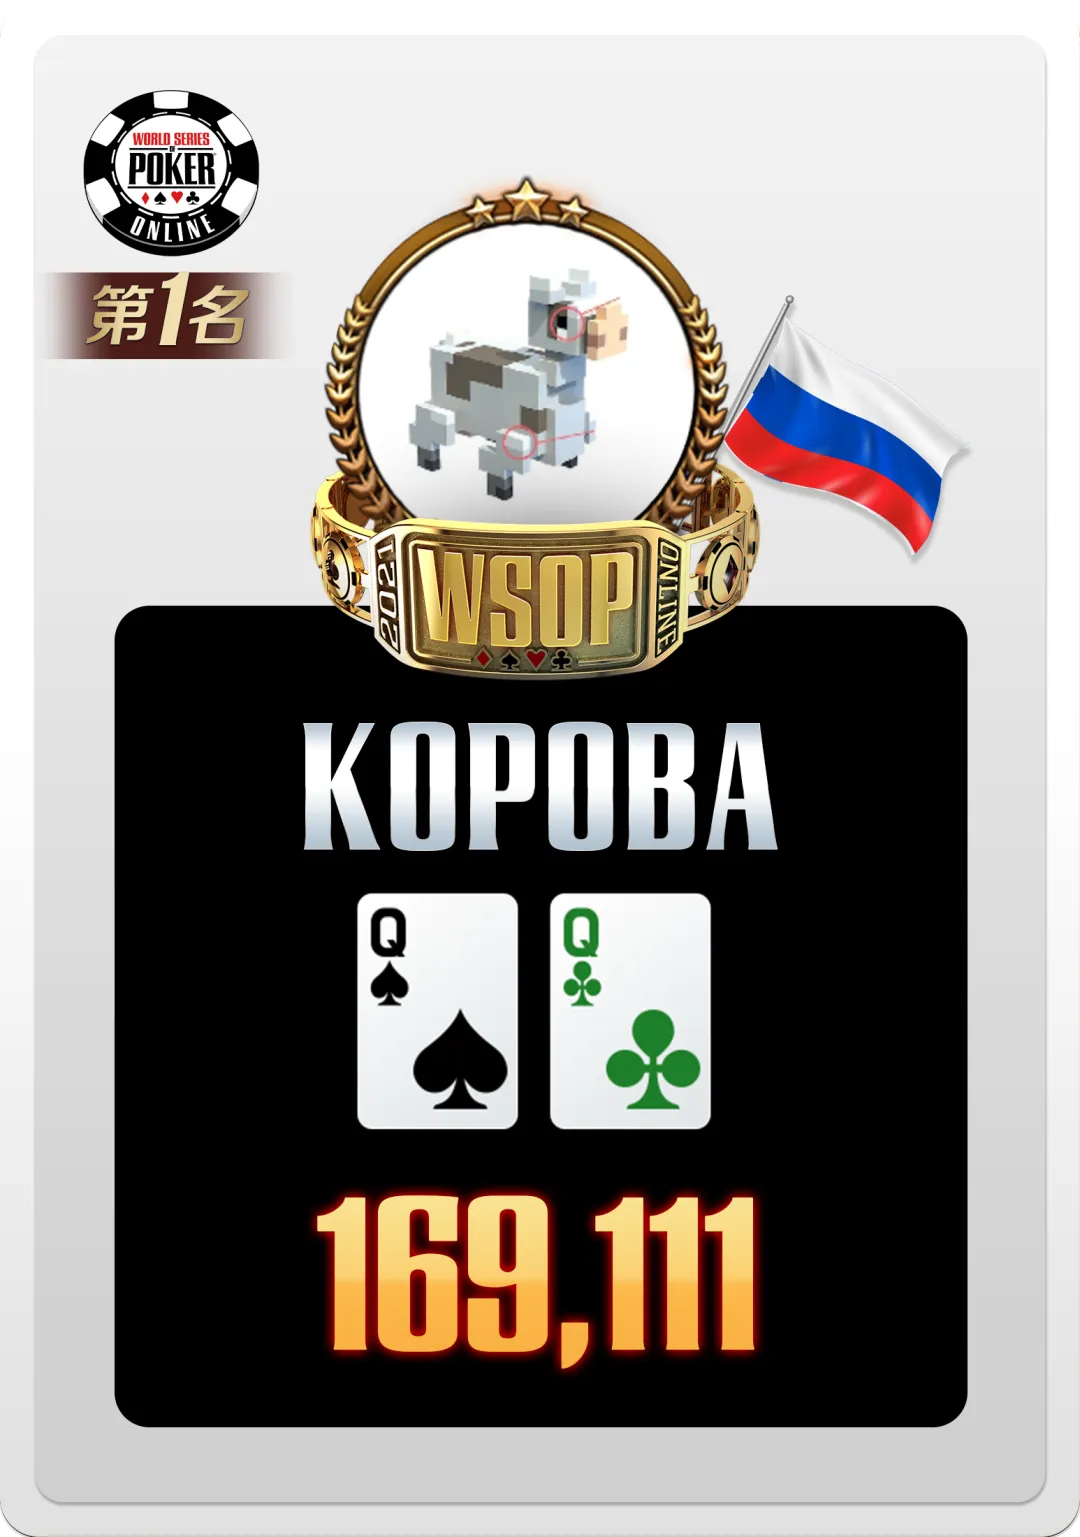 【蜗牛扑克】WSOP国人奖励进入世界排名！就是这一「手牌」让亚军和季军只能看着金手链掉眼泪